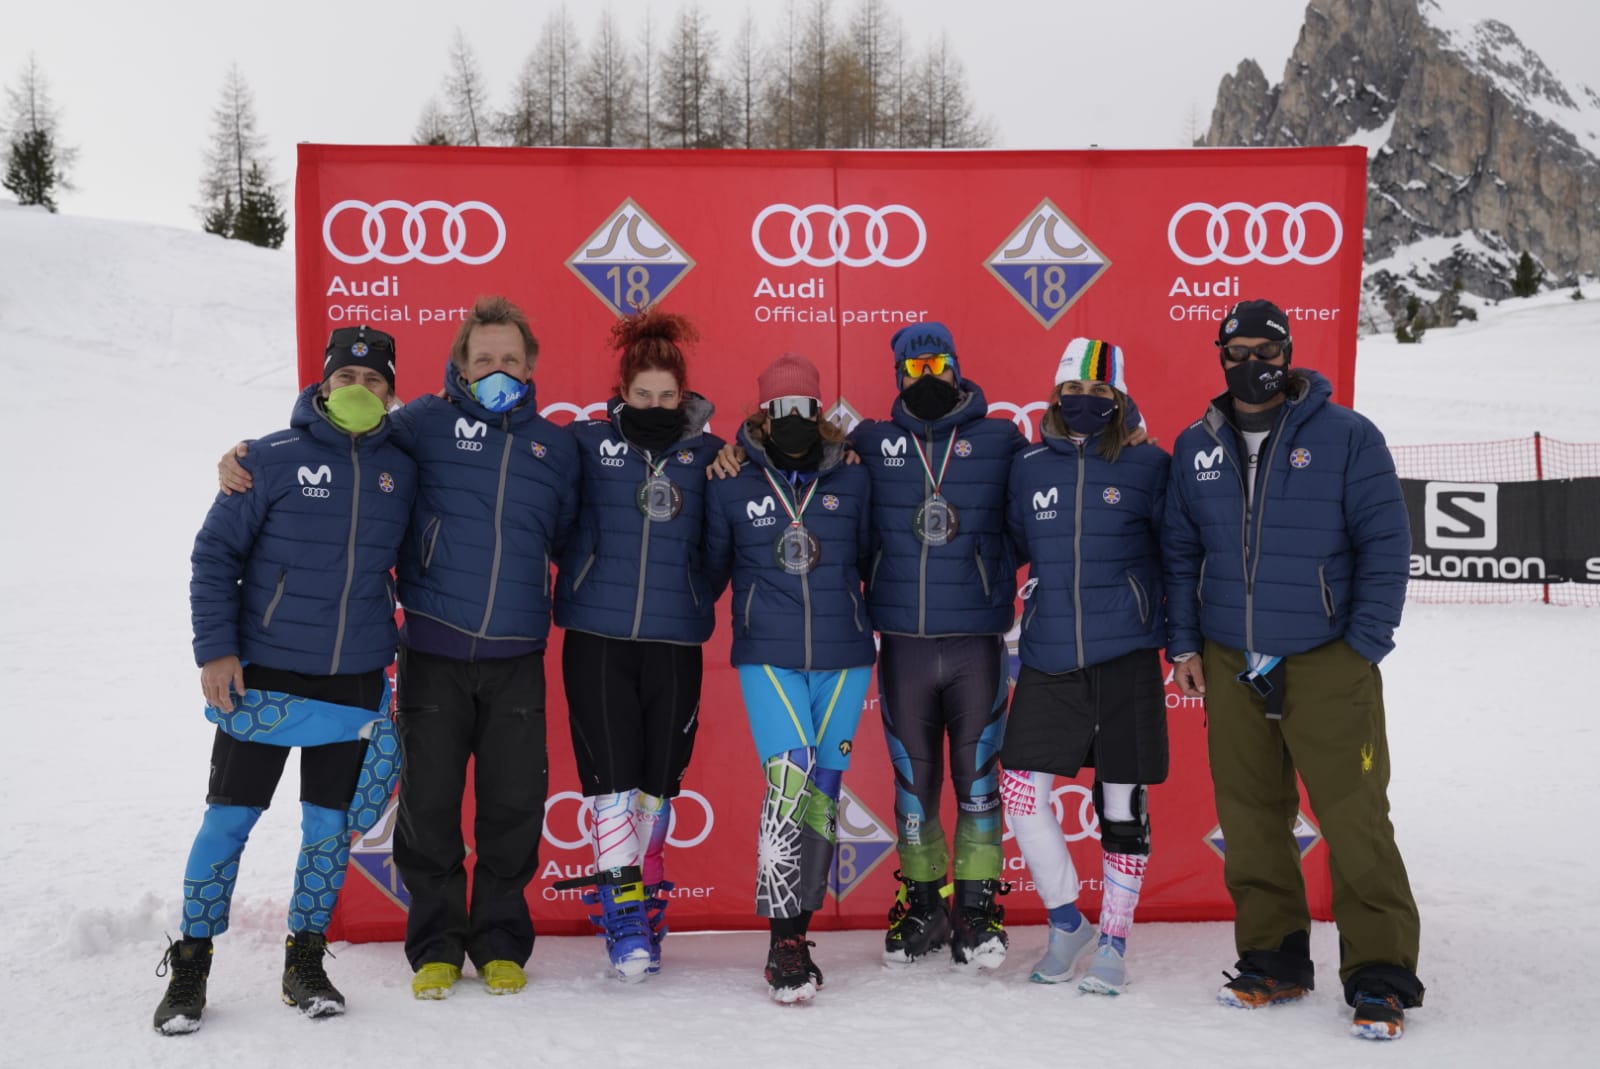 7 medallas españolas en el FIS World Criterium Masters en Cortina d’Ampezzo